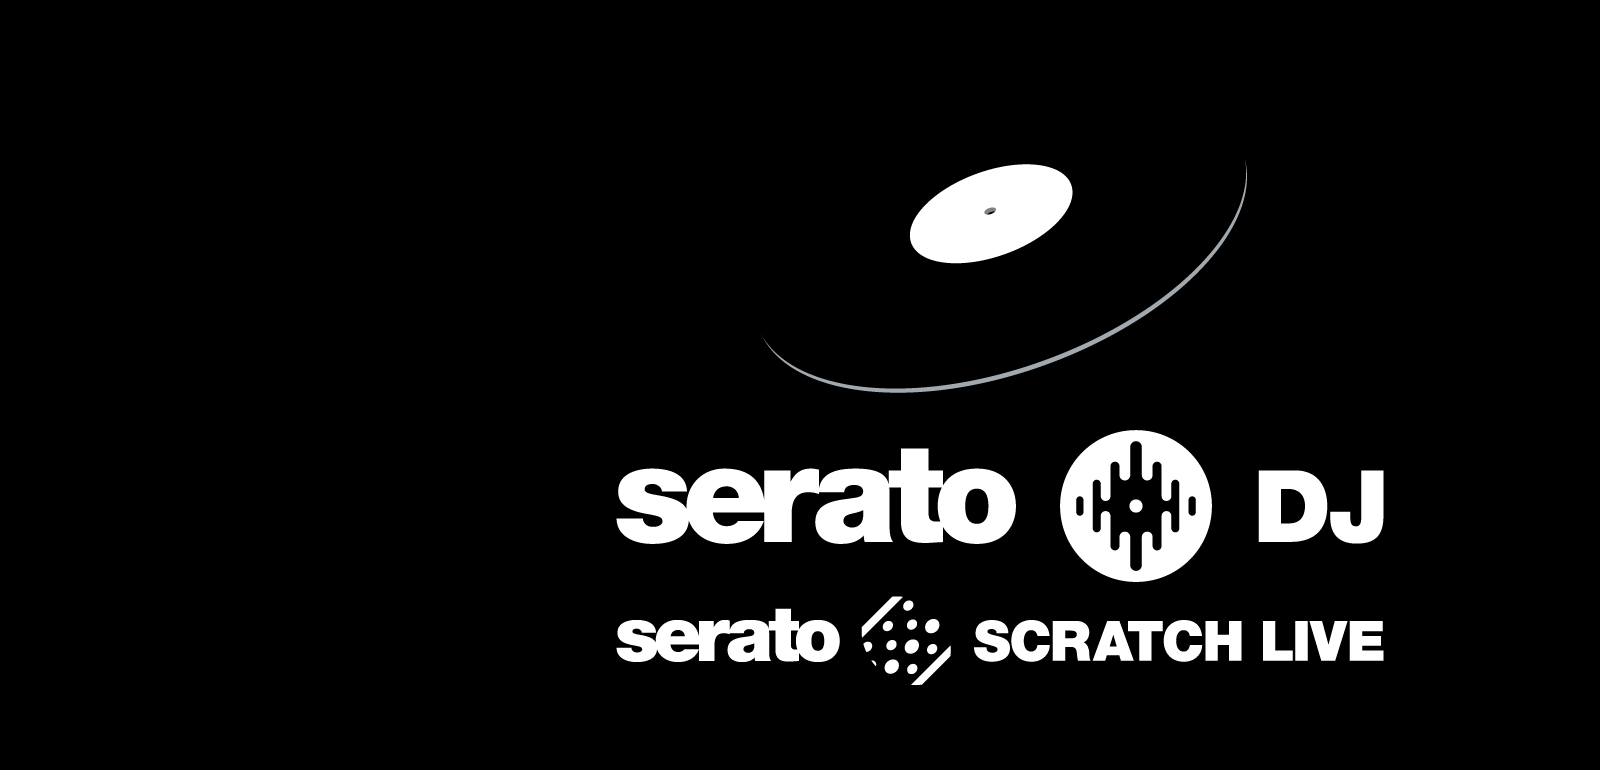 Sixty Four Mixer For Serato Dj